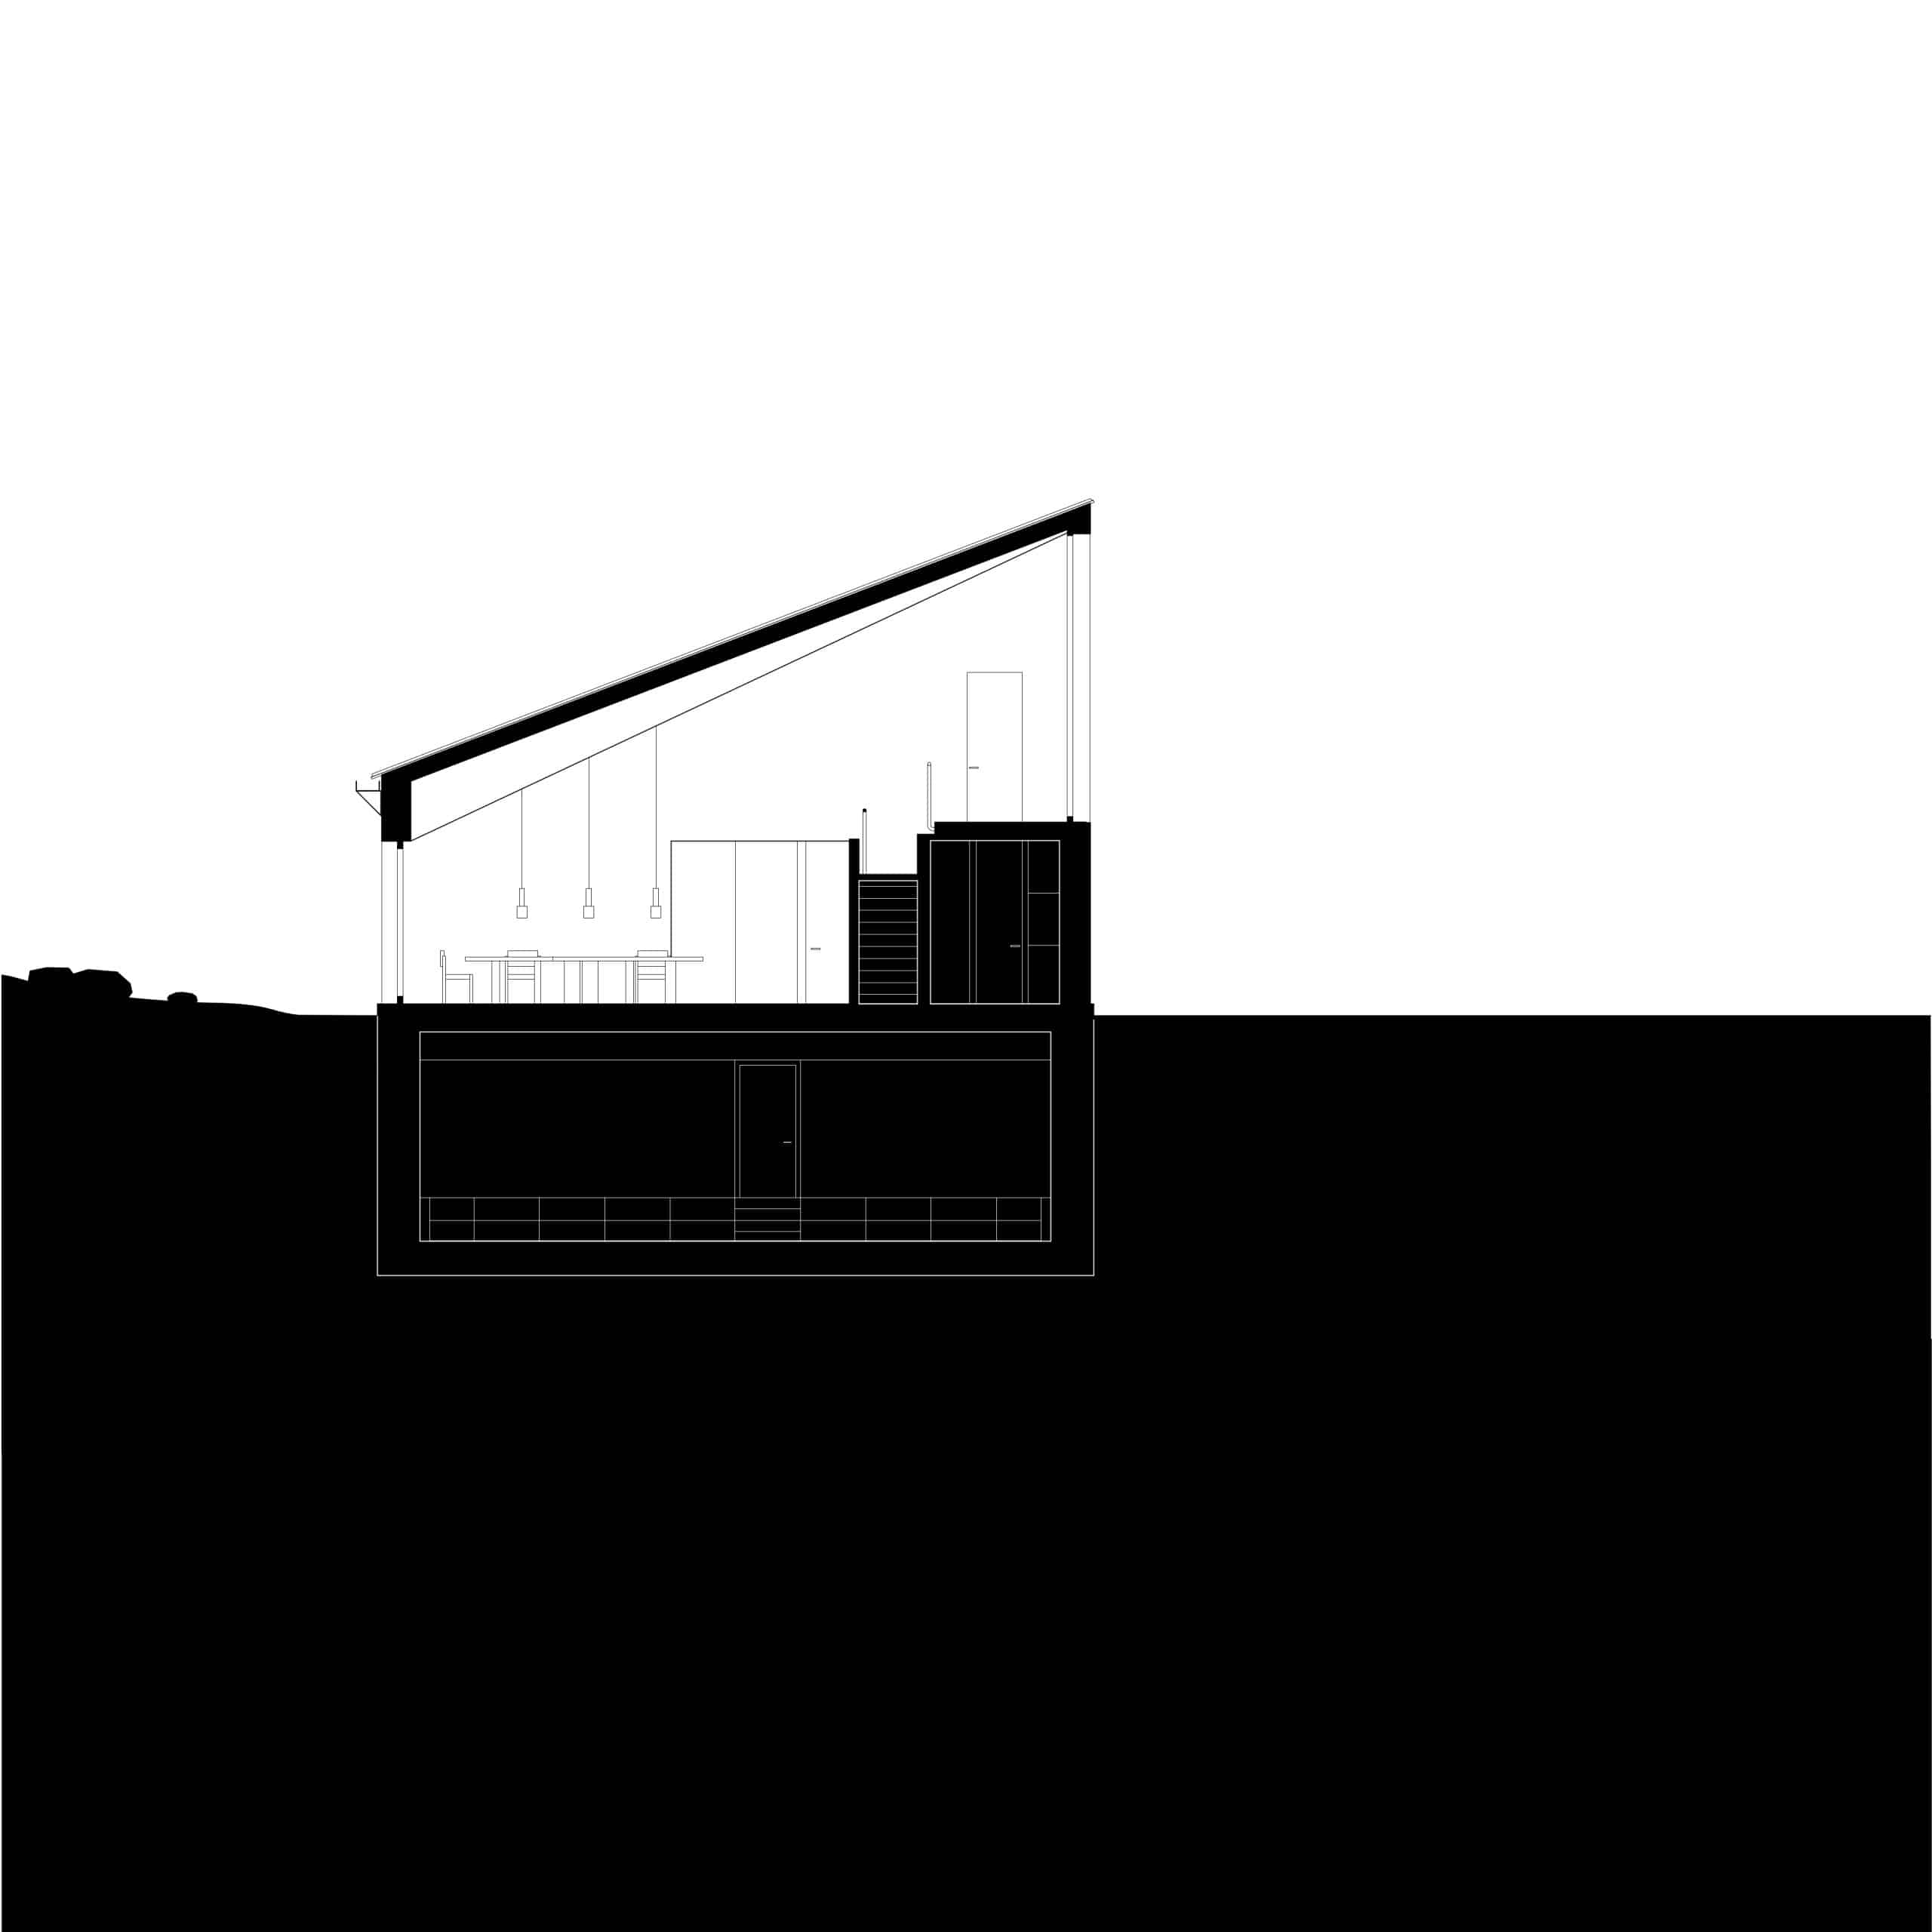 An einem großen Grundstück am See haben Appels Architekten ein schwarzes Holz-Haus gebaut, welches fast in seiner Umgebung verschwindet. Foto: Florian Holzherr